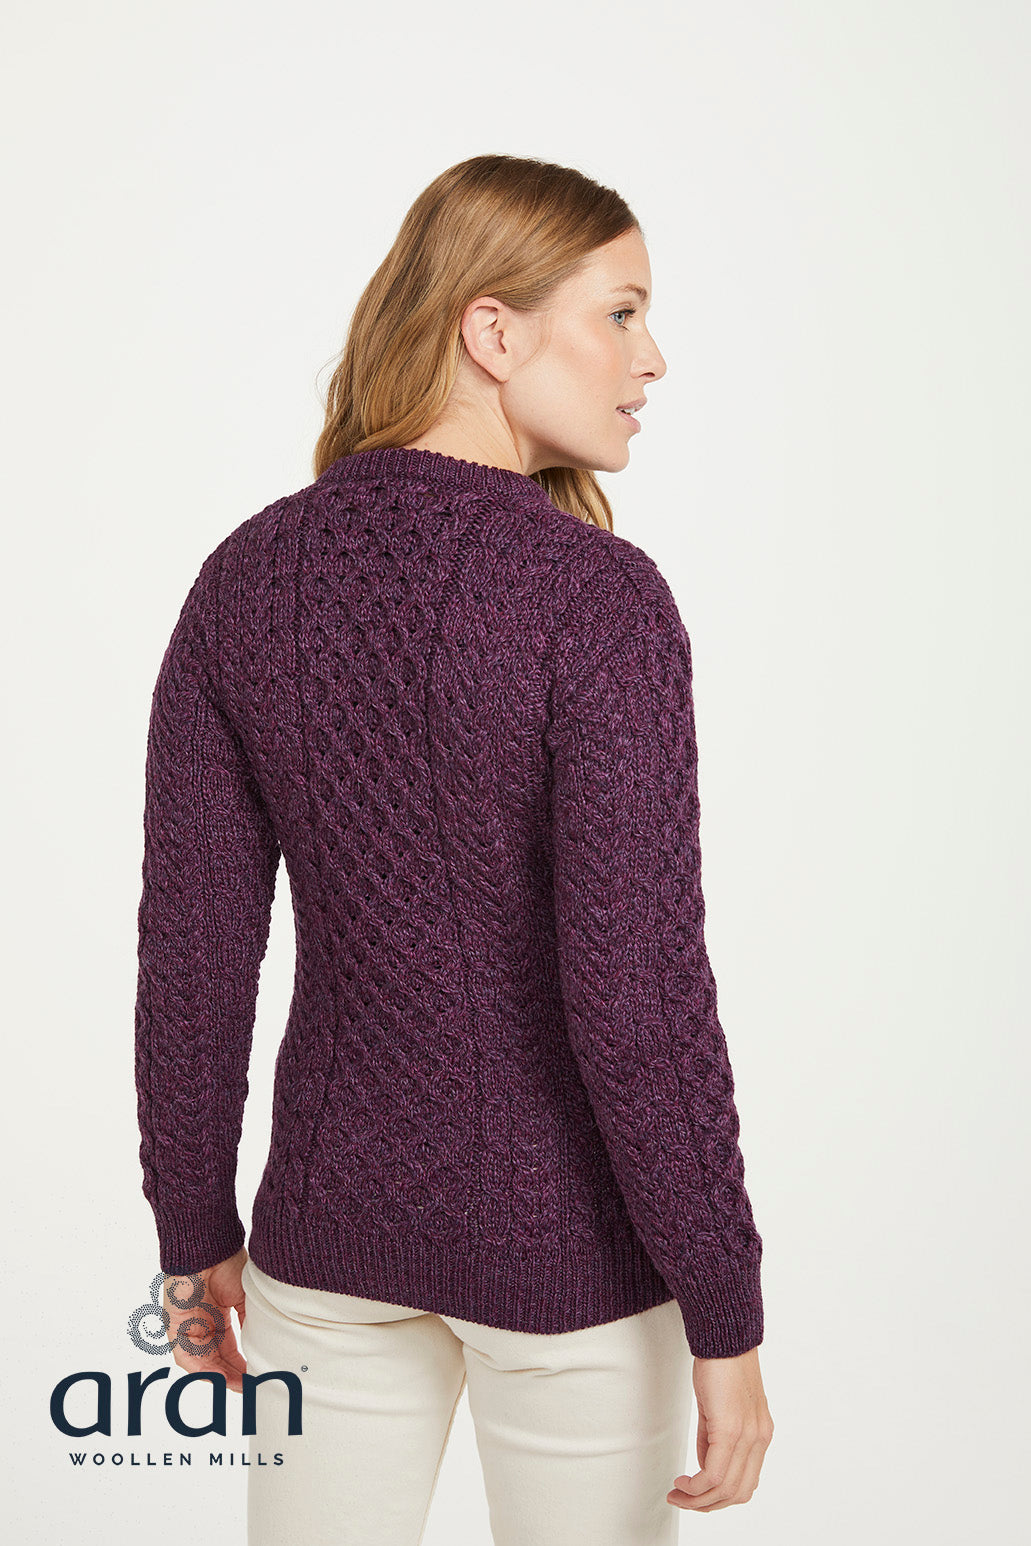 Aran Woollen Mills - B320 | women's merino wool sweater 